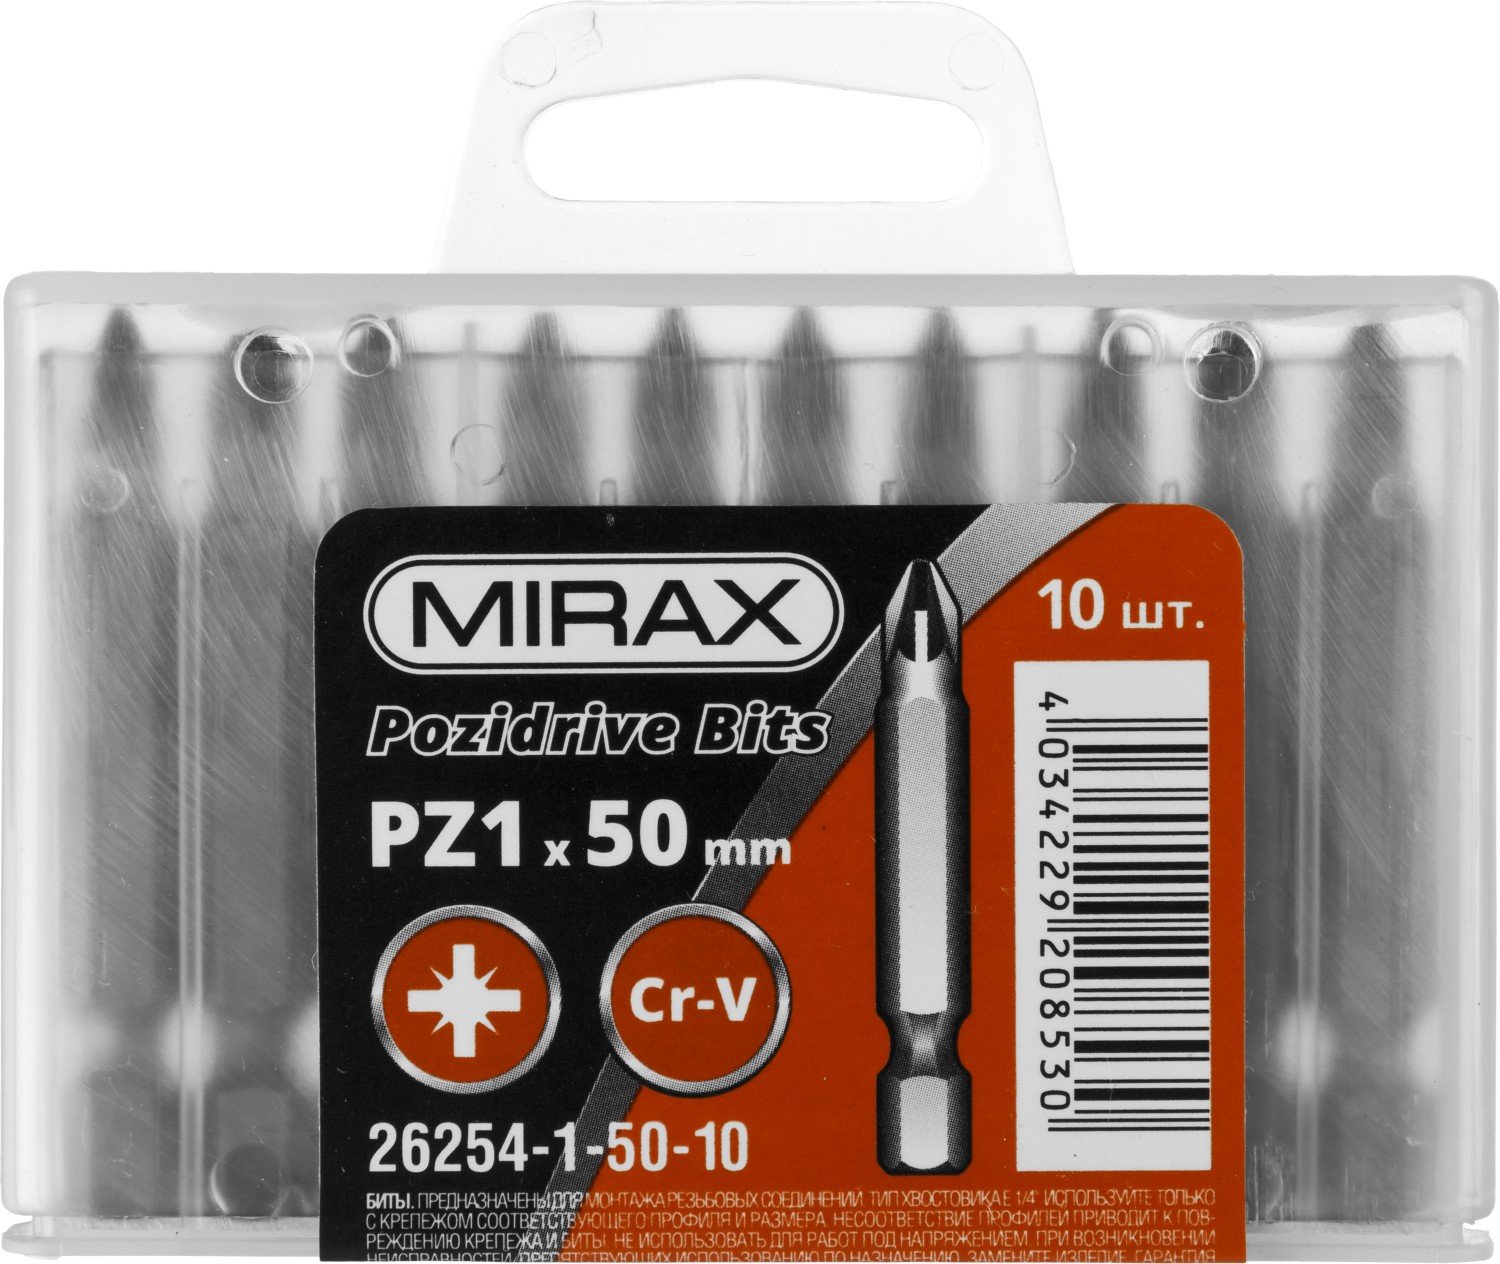   MIRAX PZ1 50  10 . (26254-1-50-10)